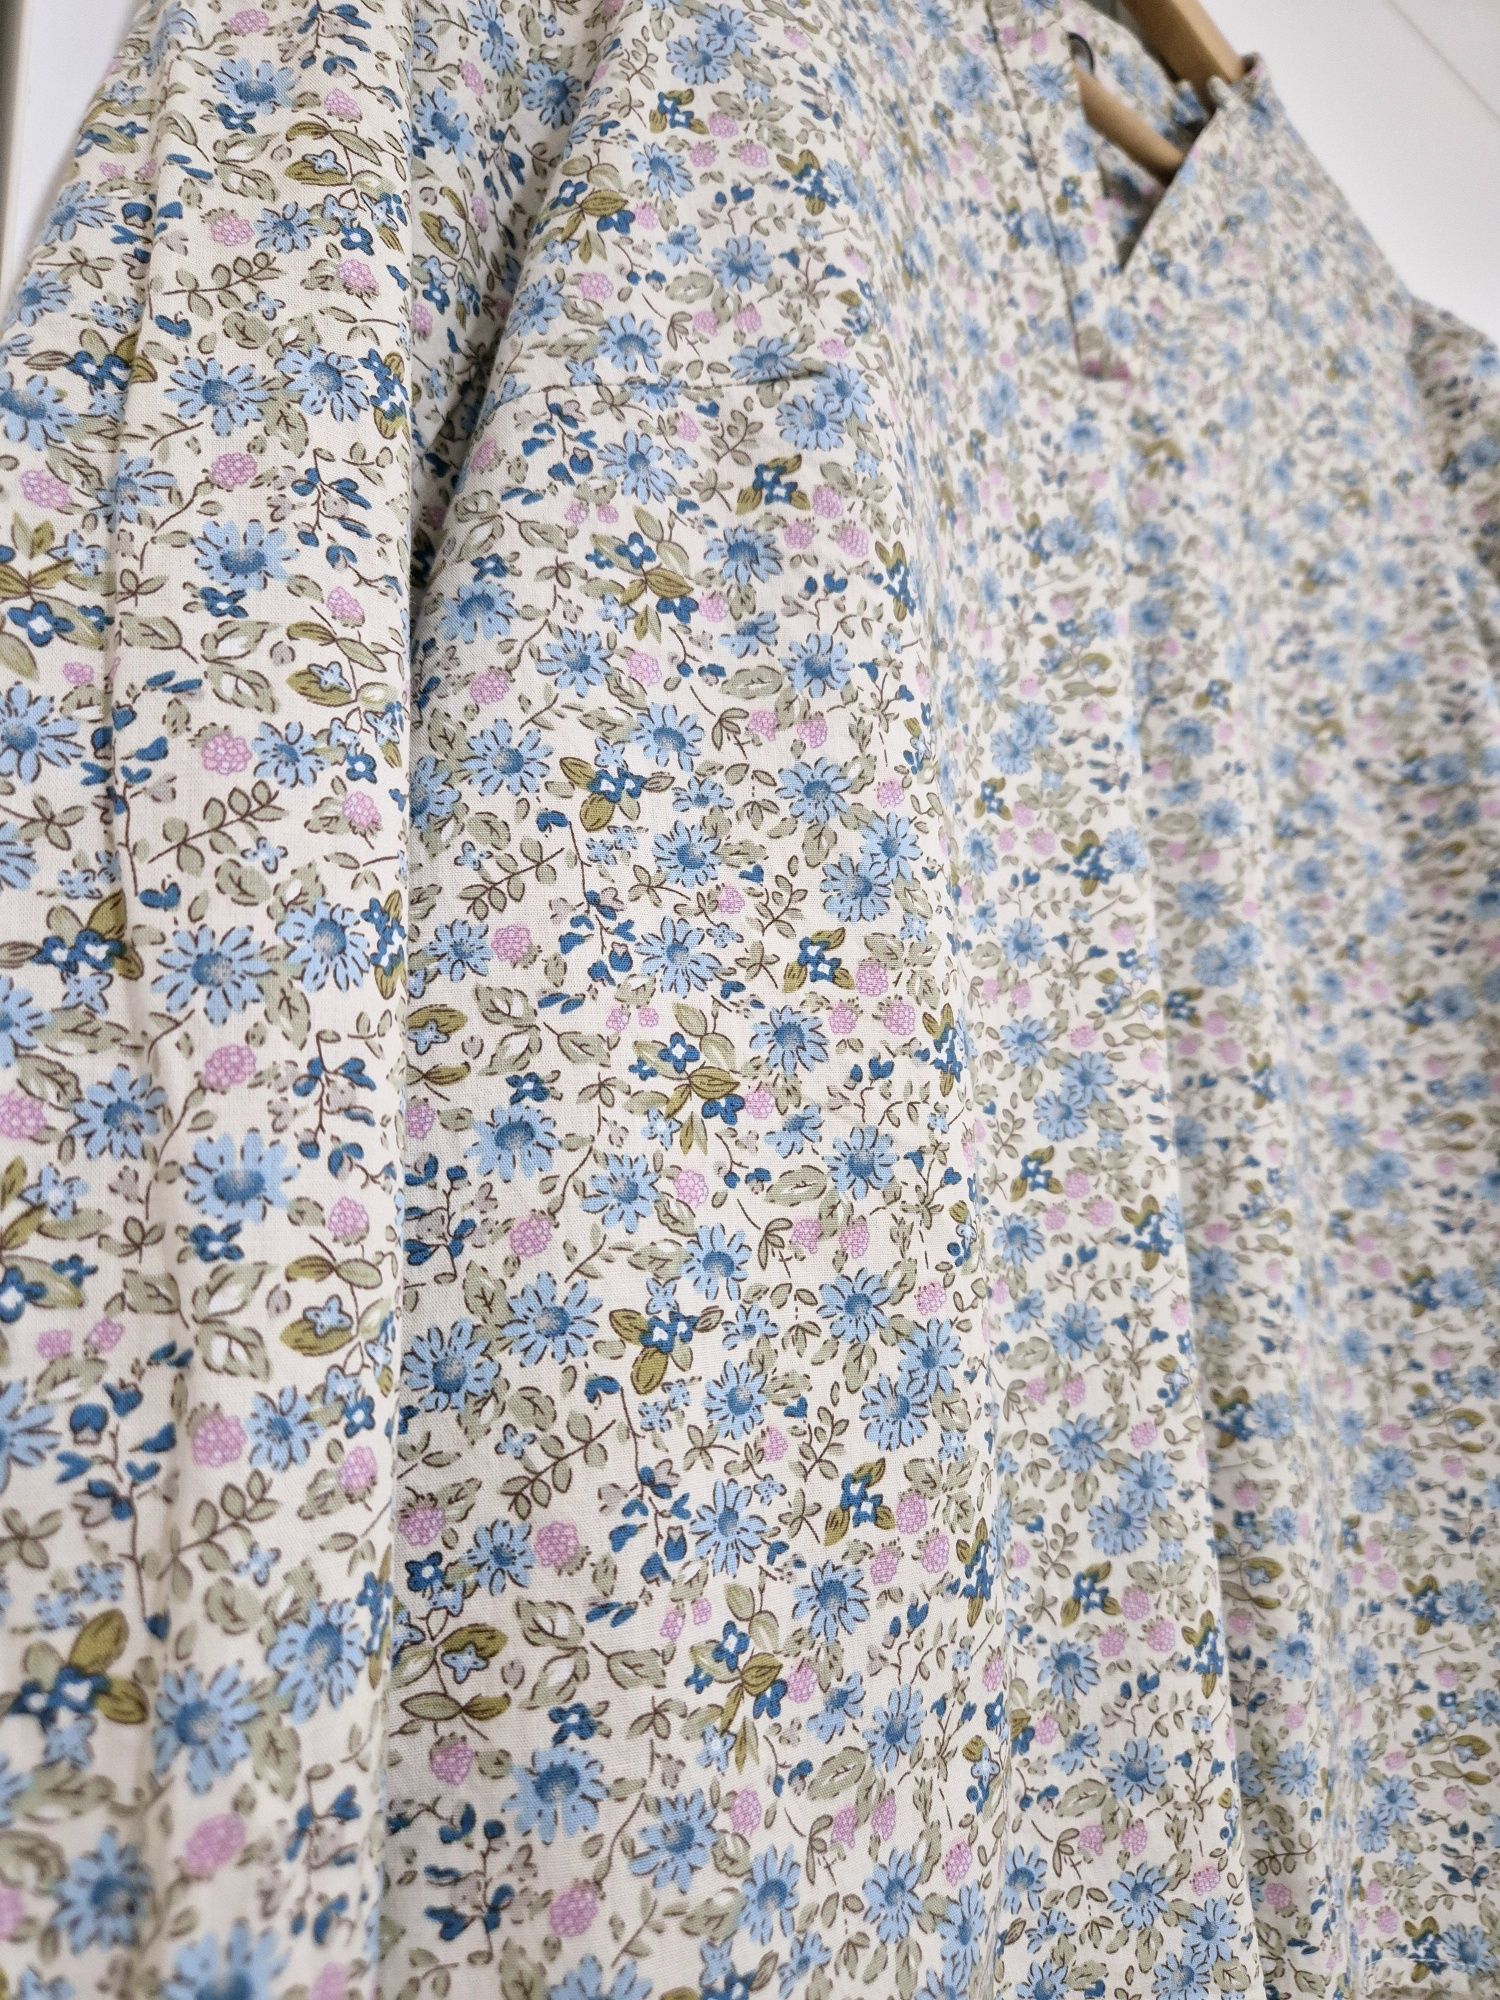 Bawełniana bluzka z długim rękawem Pulz kremowa w kwiaty